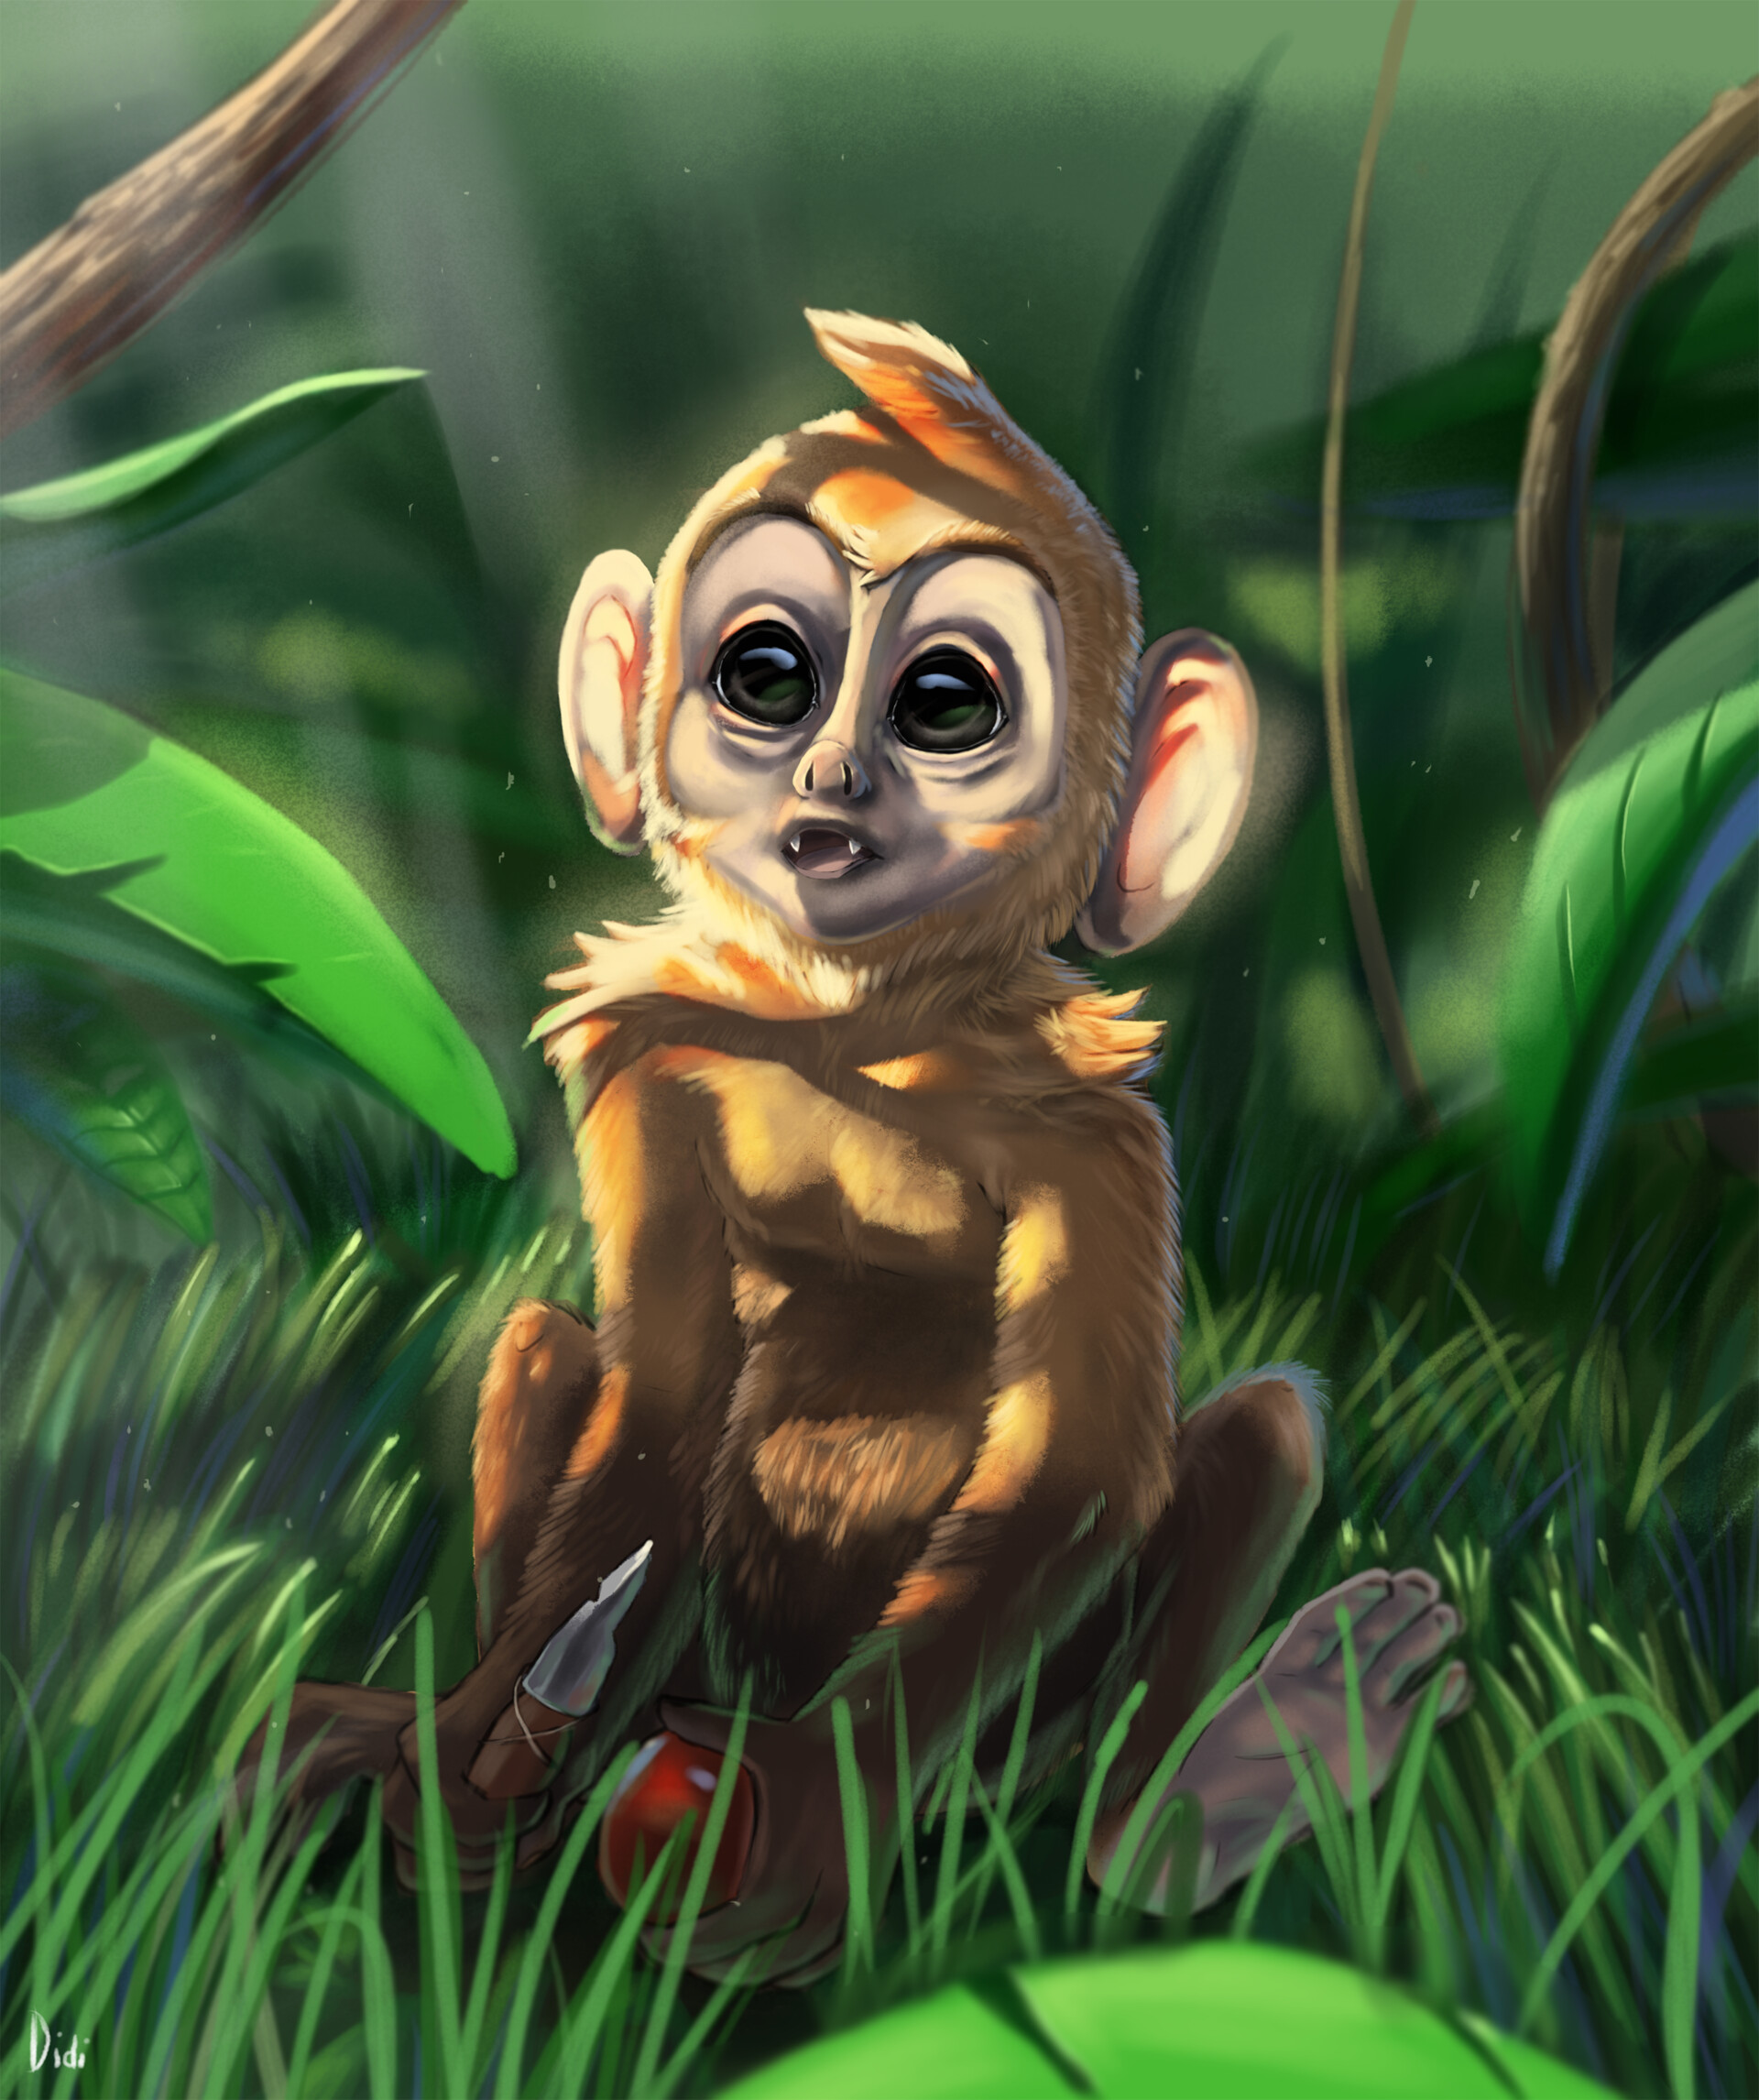 ArtStation - Baby monkey